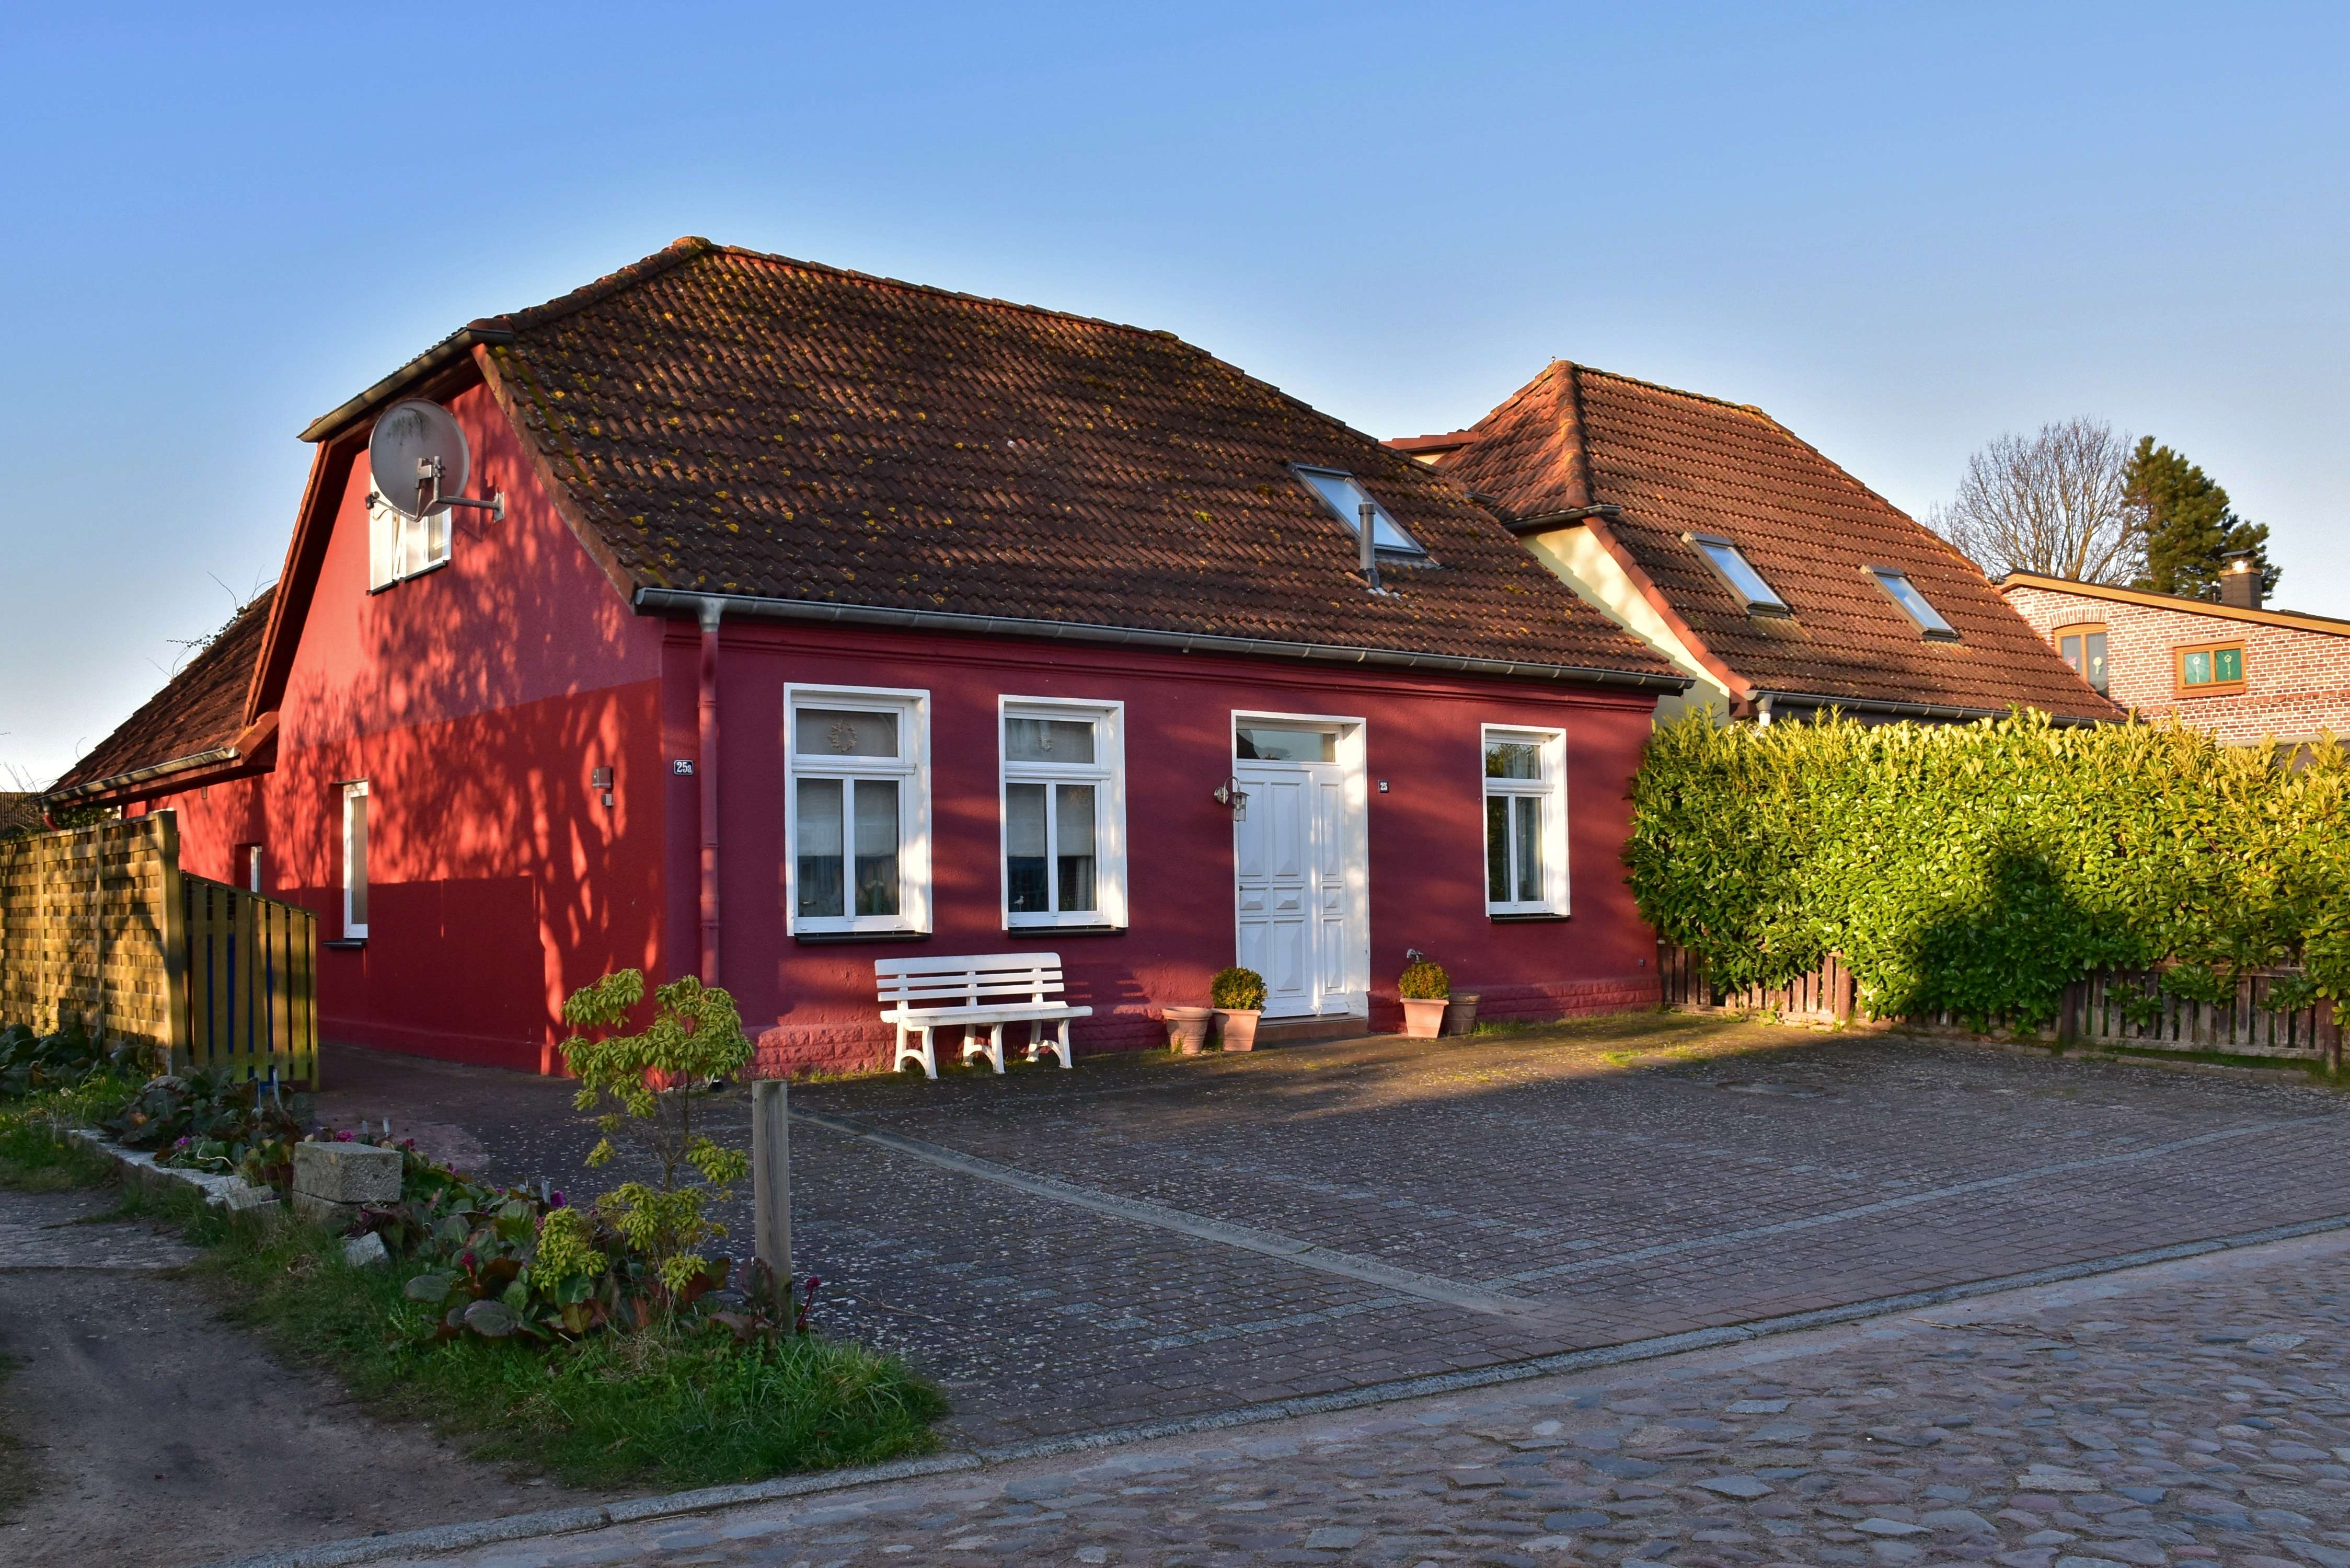 2 Zimmer Ferienwohnung in schöner Fischerhütte in Dierhagen OT Dändorf mit Stellplatz